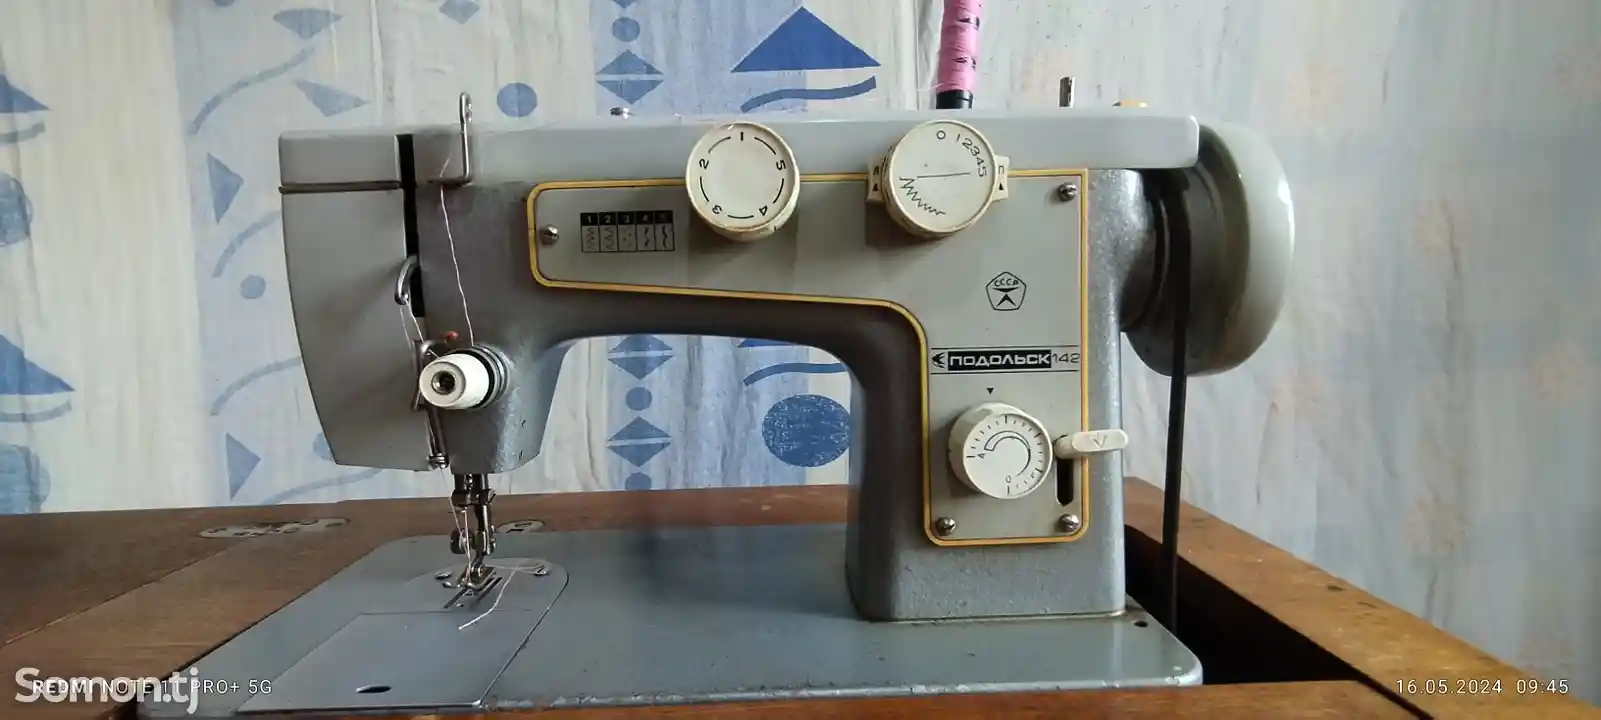 Швейная машина Подольск 142-1